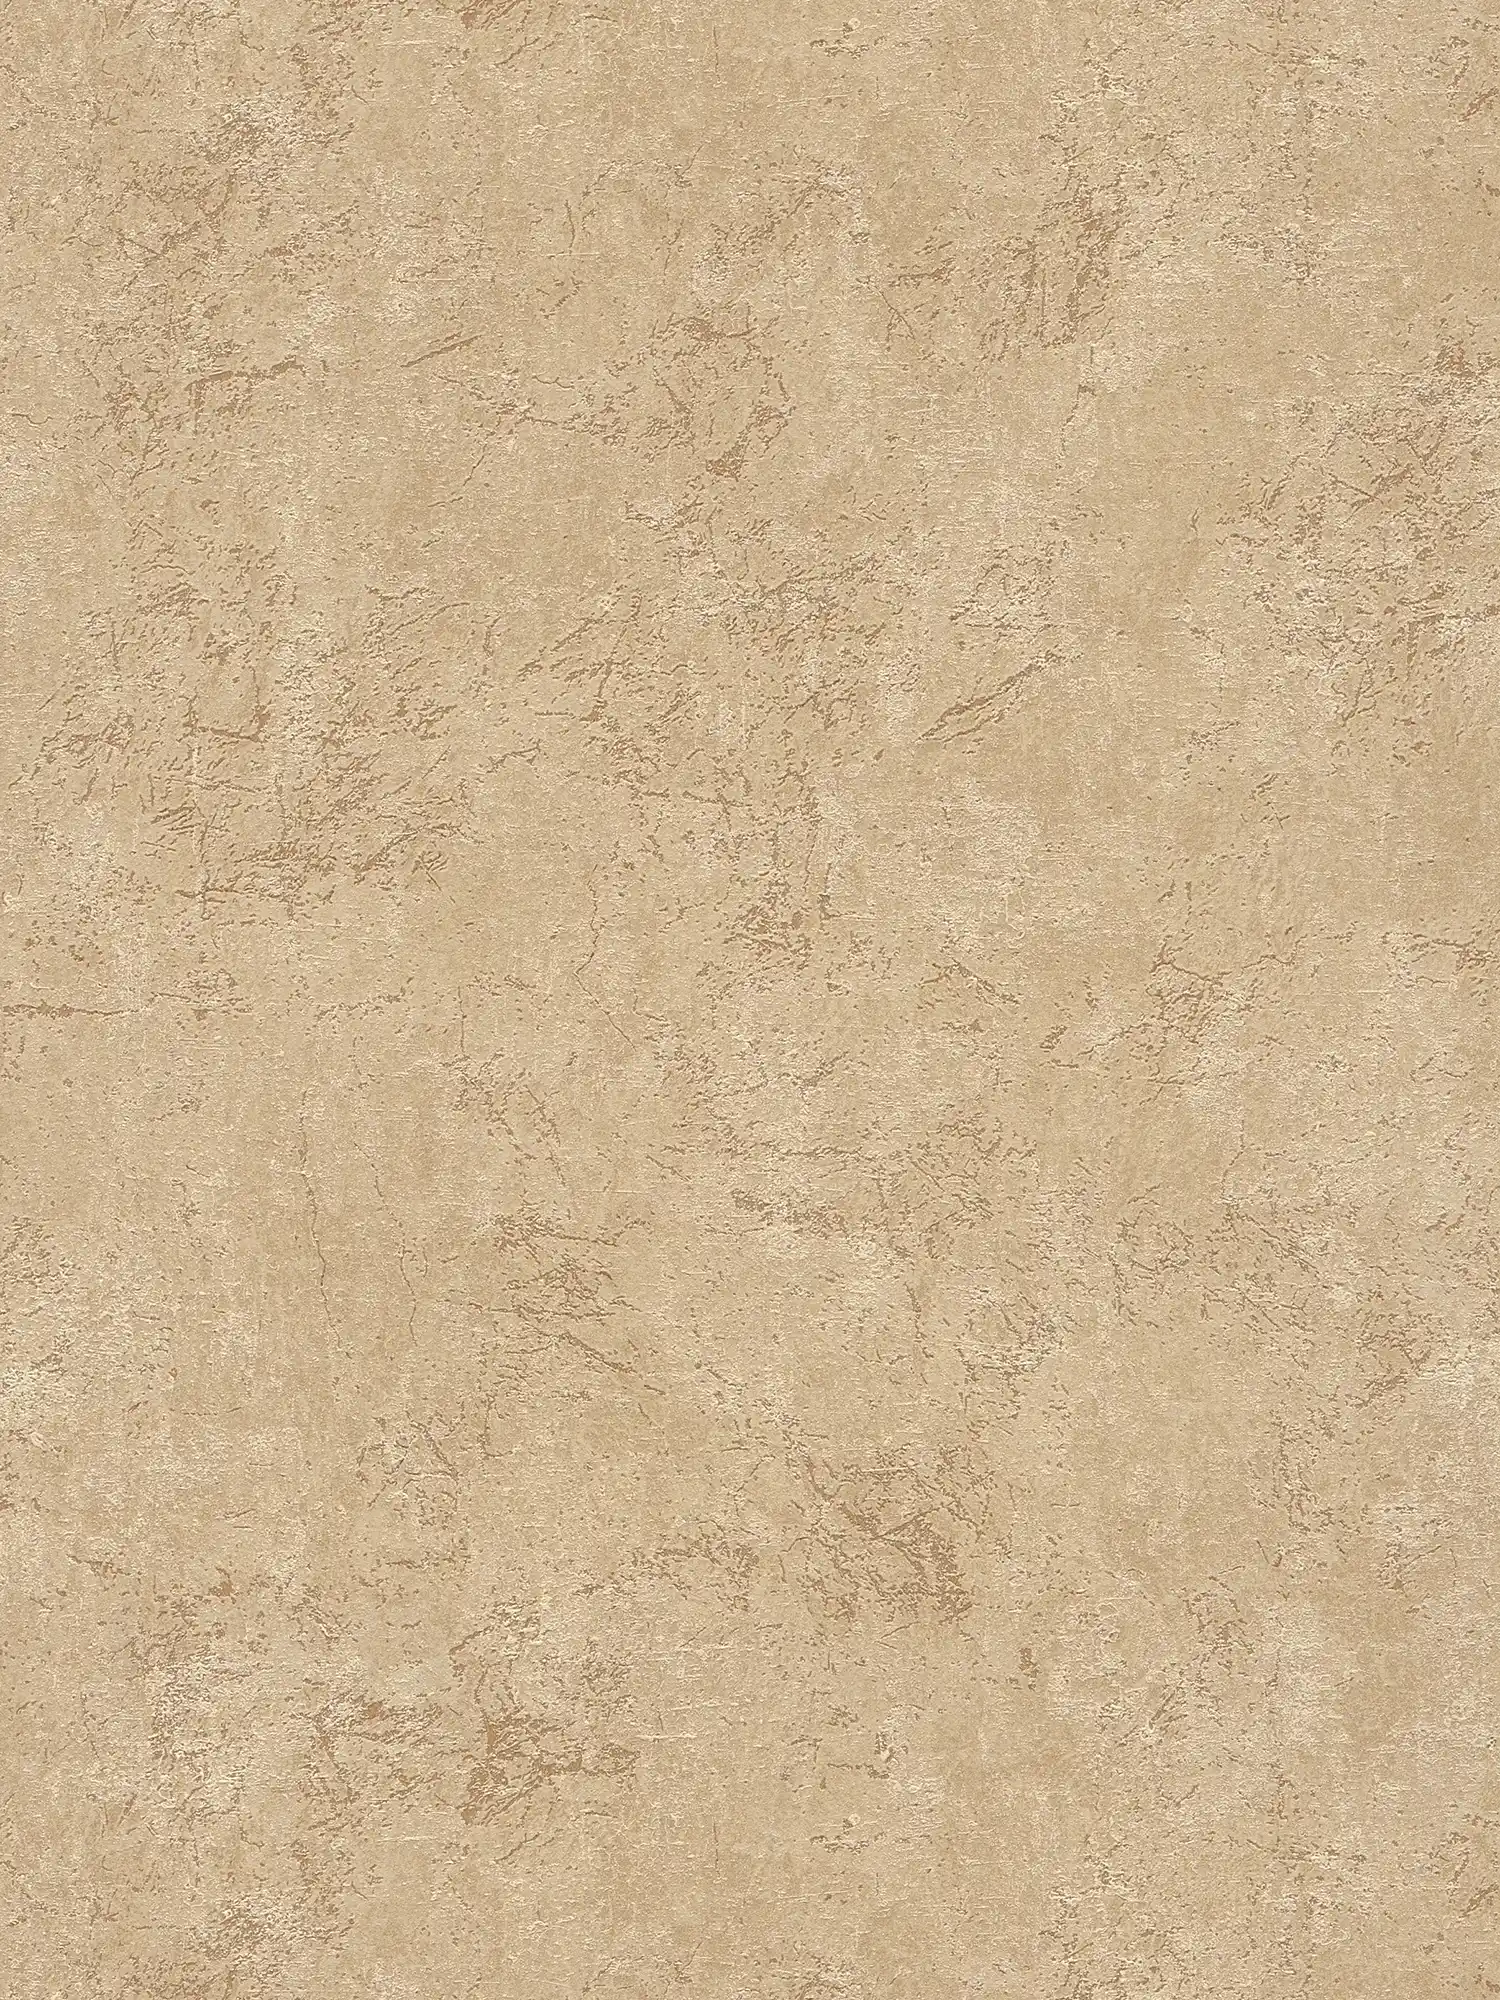 Papel pintado de aspecto de piedra beige claro en aspecto de piedra arenisca
